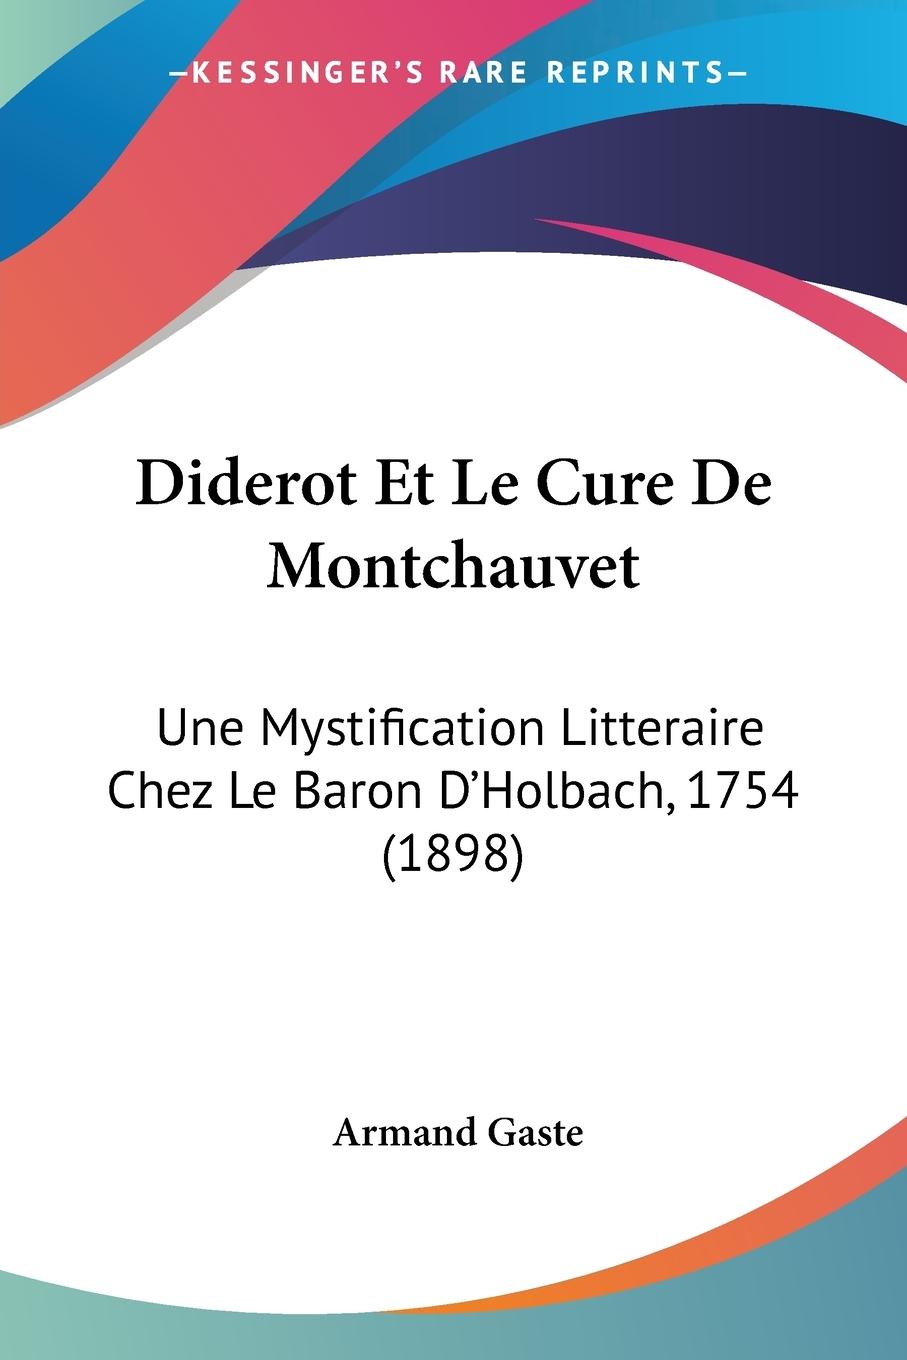 Diderot Et Le Cure De Montchauvet - Gaste, Armand